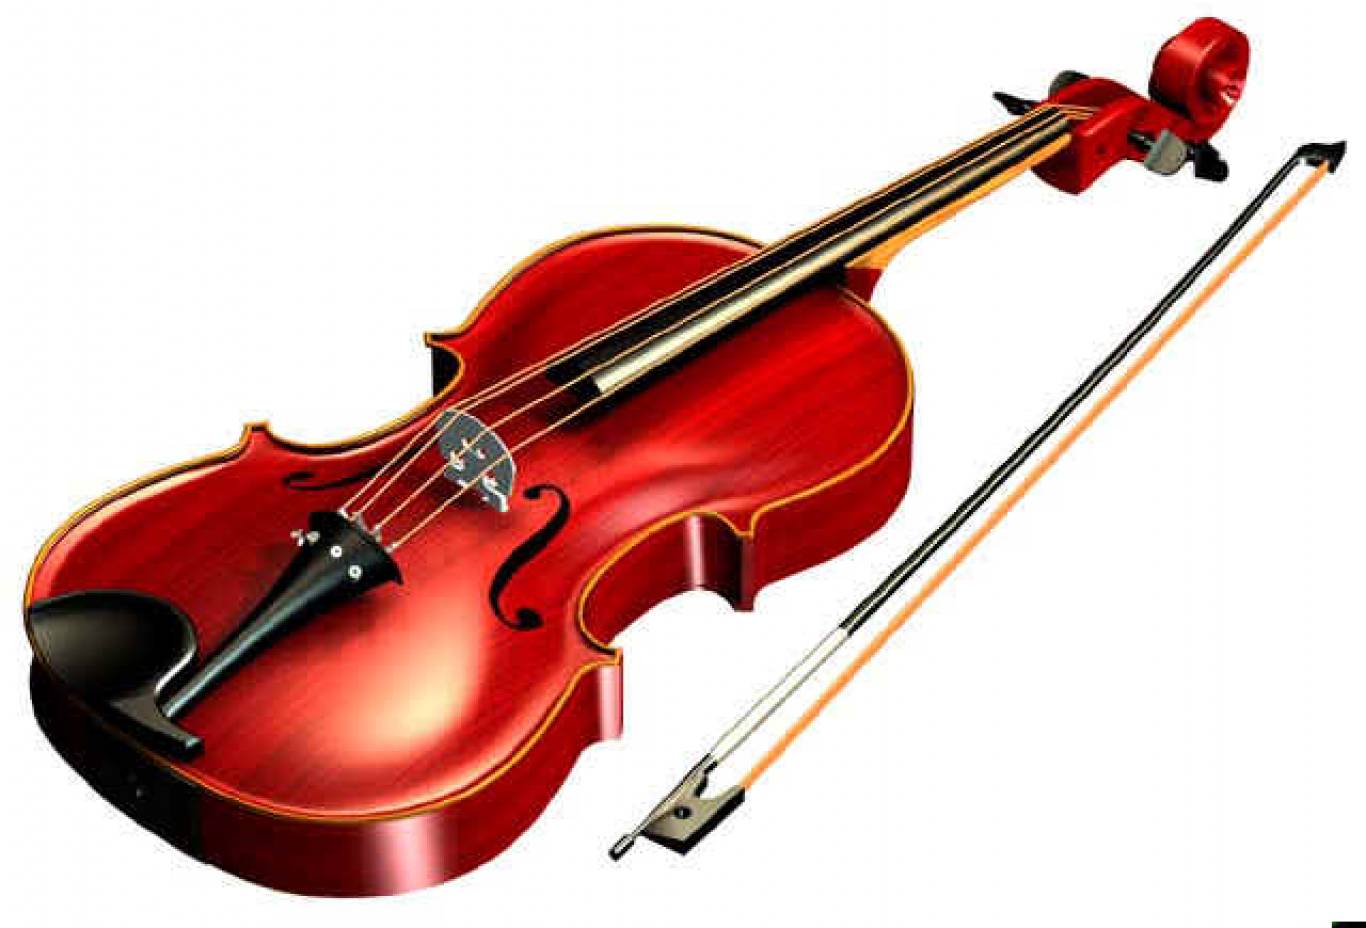 Изображение скрипки. Скрипка Viola. Скрипка для детей. Муз инструмент скрипка. Скрипка картинка.